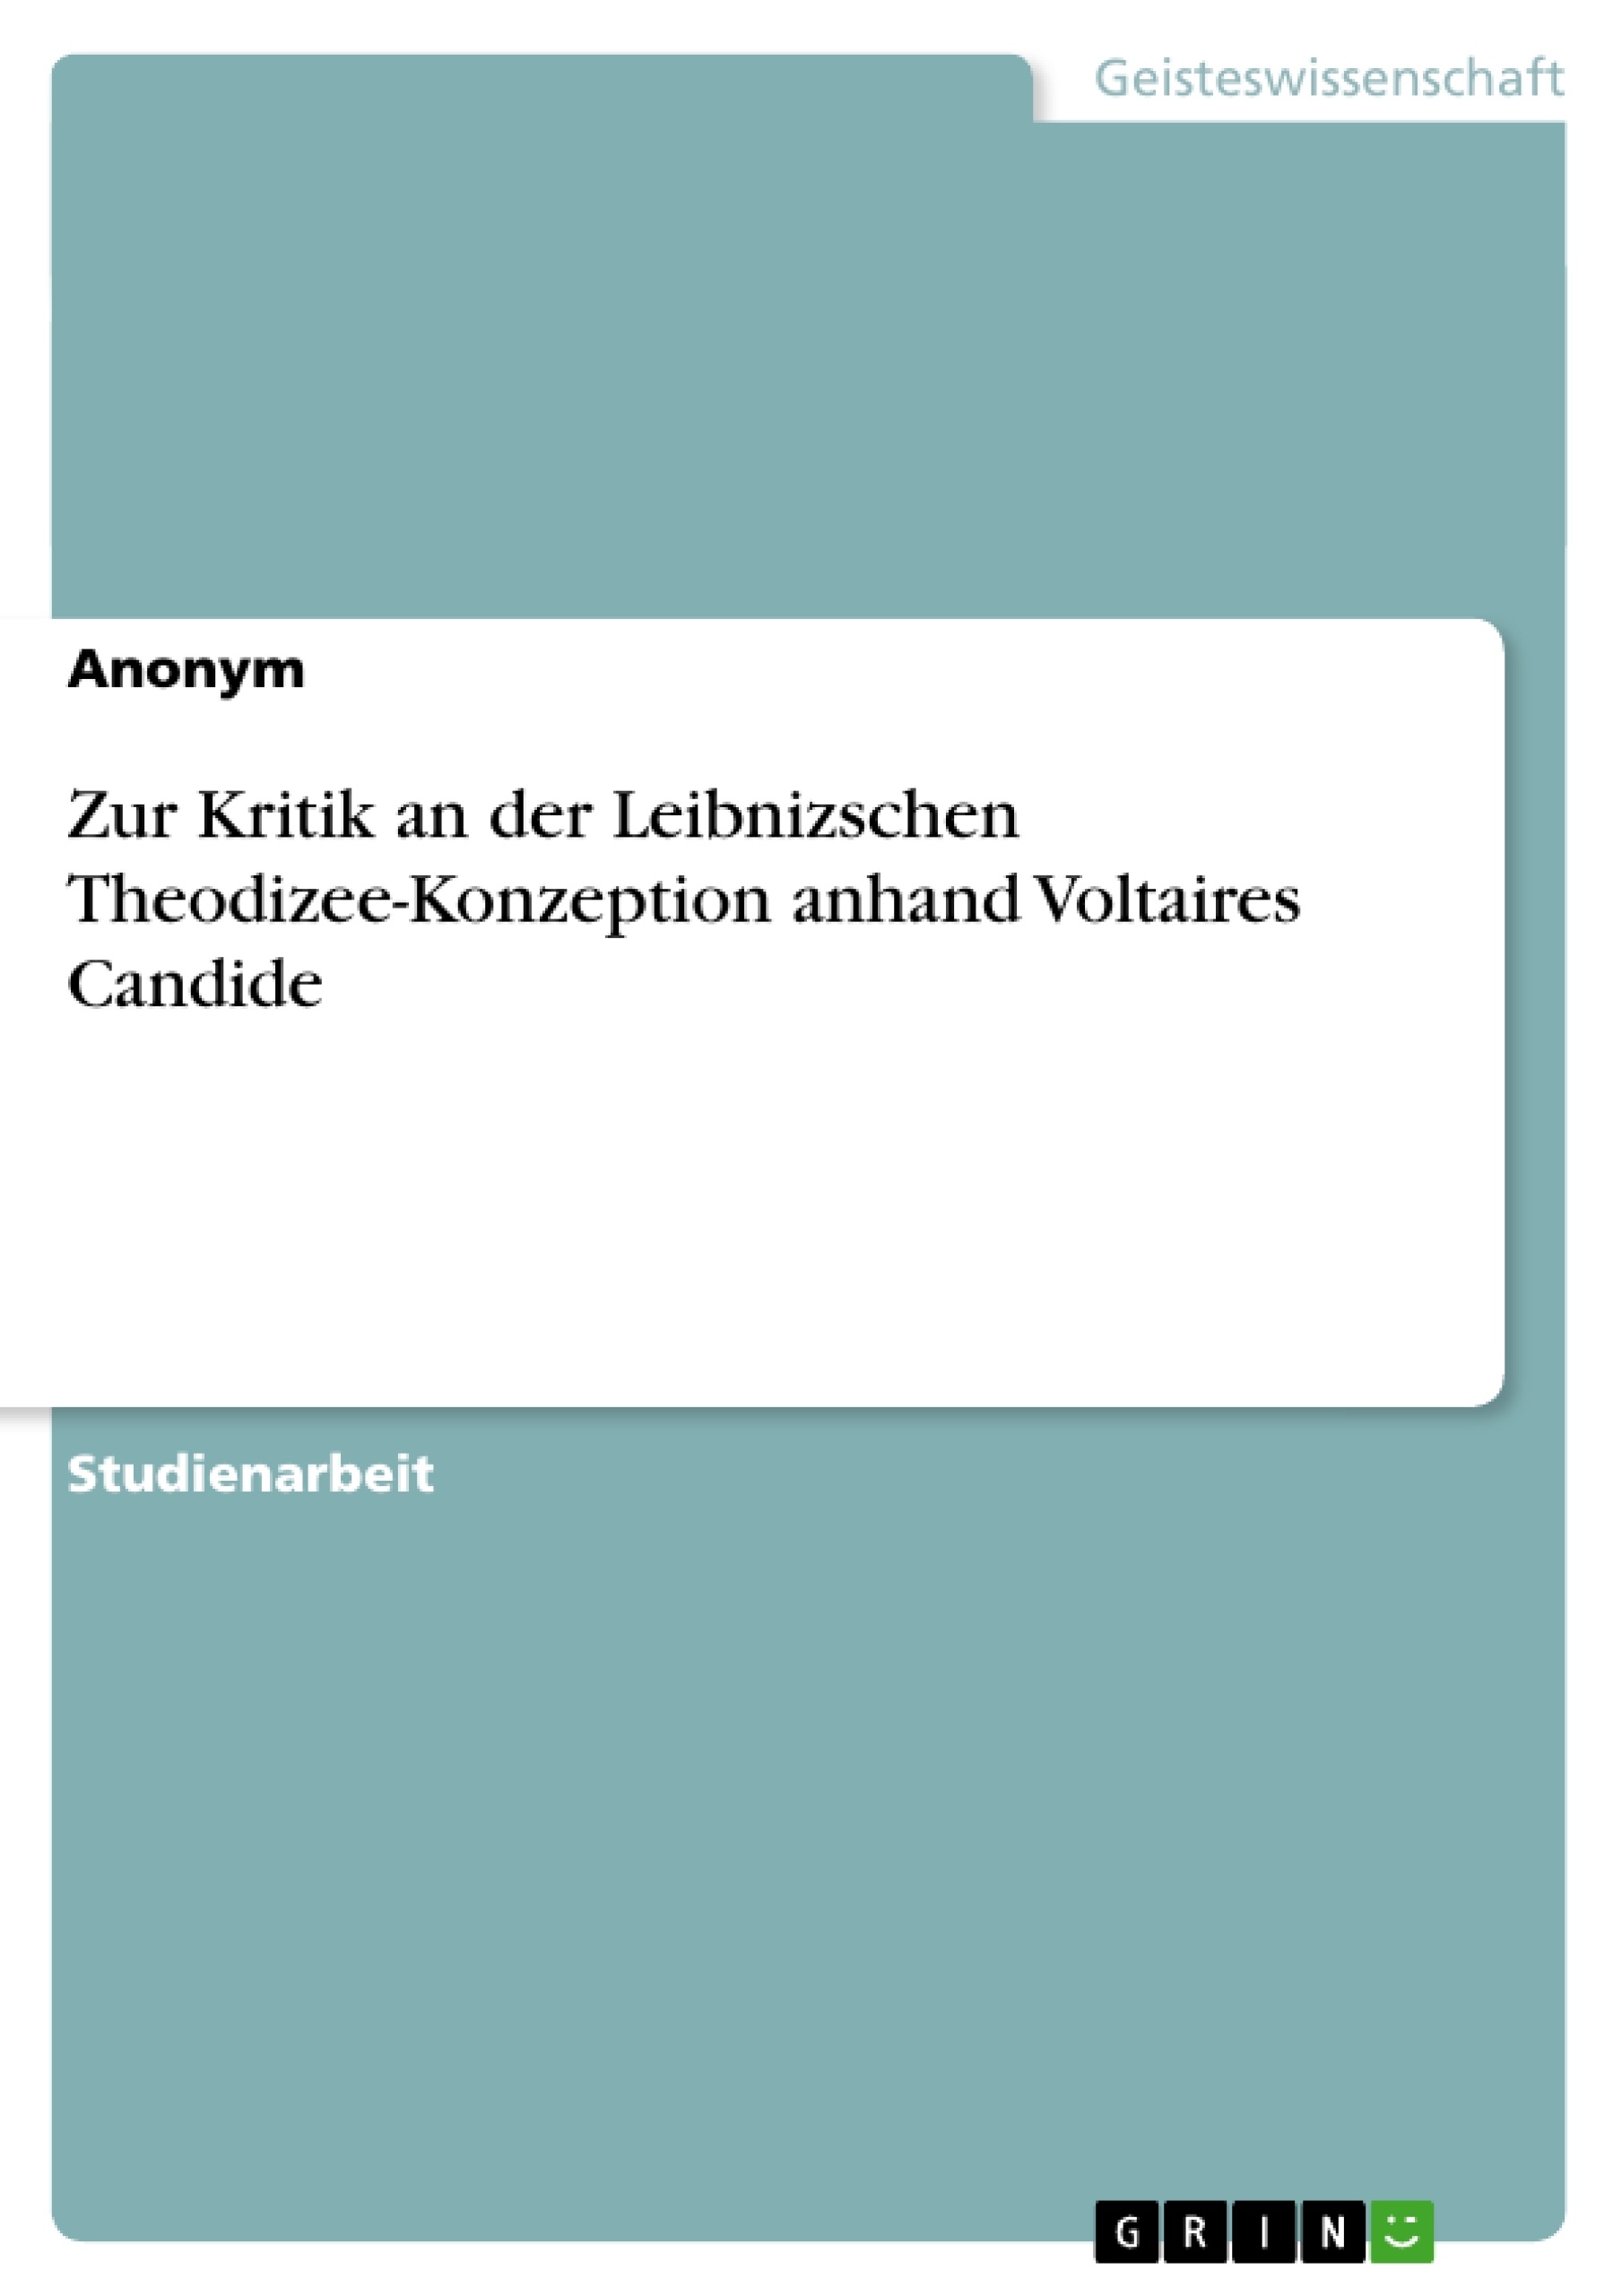 Titre: Zur Kritik an der Leibnizschen Theodizee-Konzeption anhand Voltaires Candide